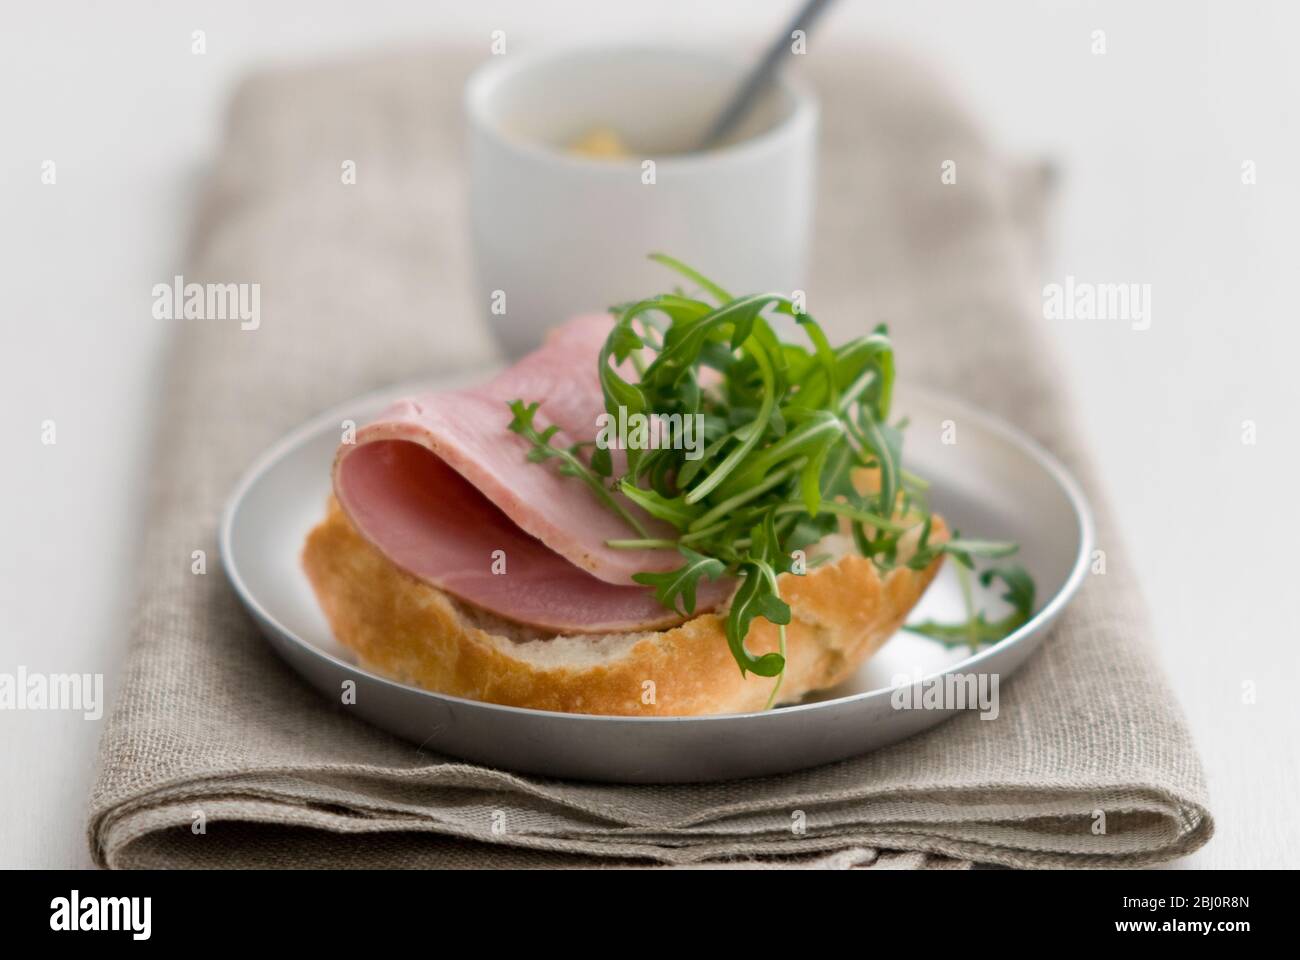 Offenes Sandwich aus knuspriger Pain Rustique Rolle, mit dicker Scheibe Qualitätsschinken und Rucola-Salatblatt-Garnitur, mit kleinem Topf Dijon-Senf - Stockfoto